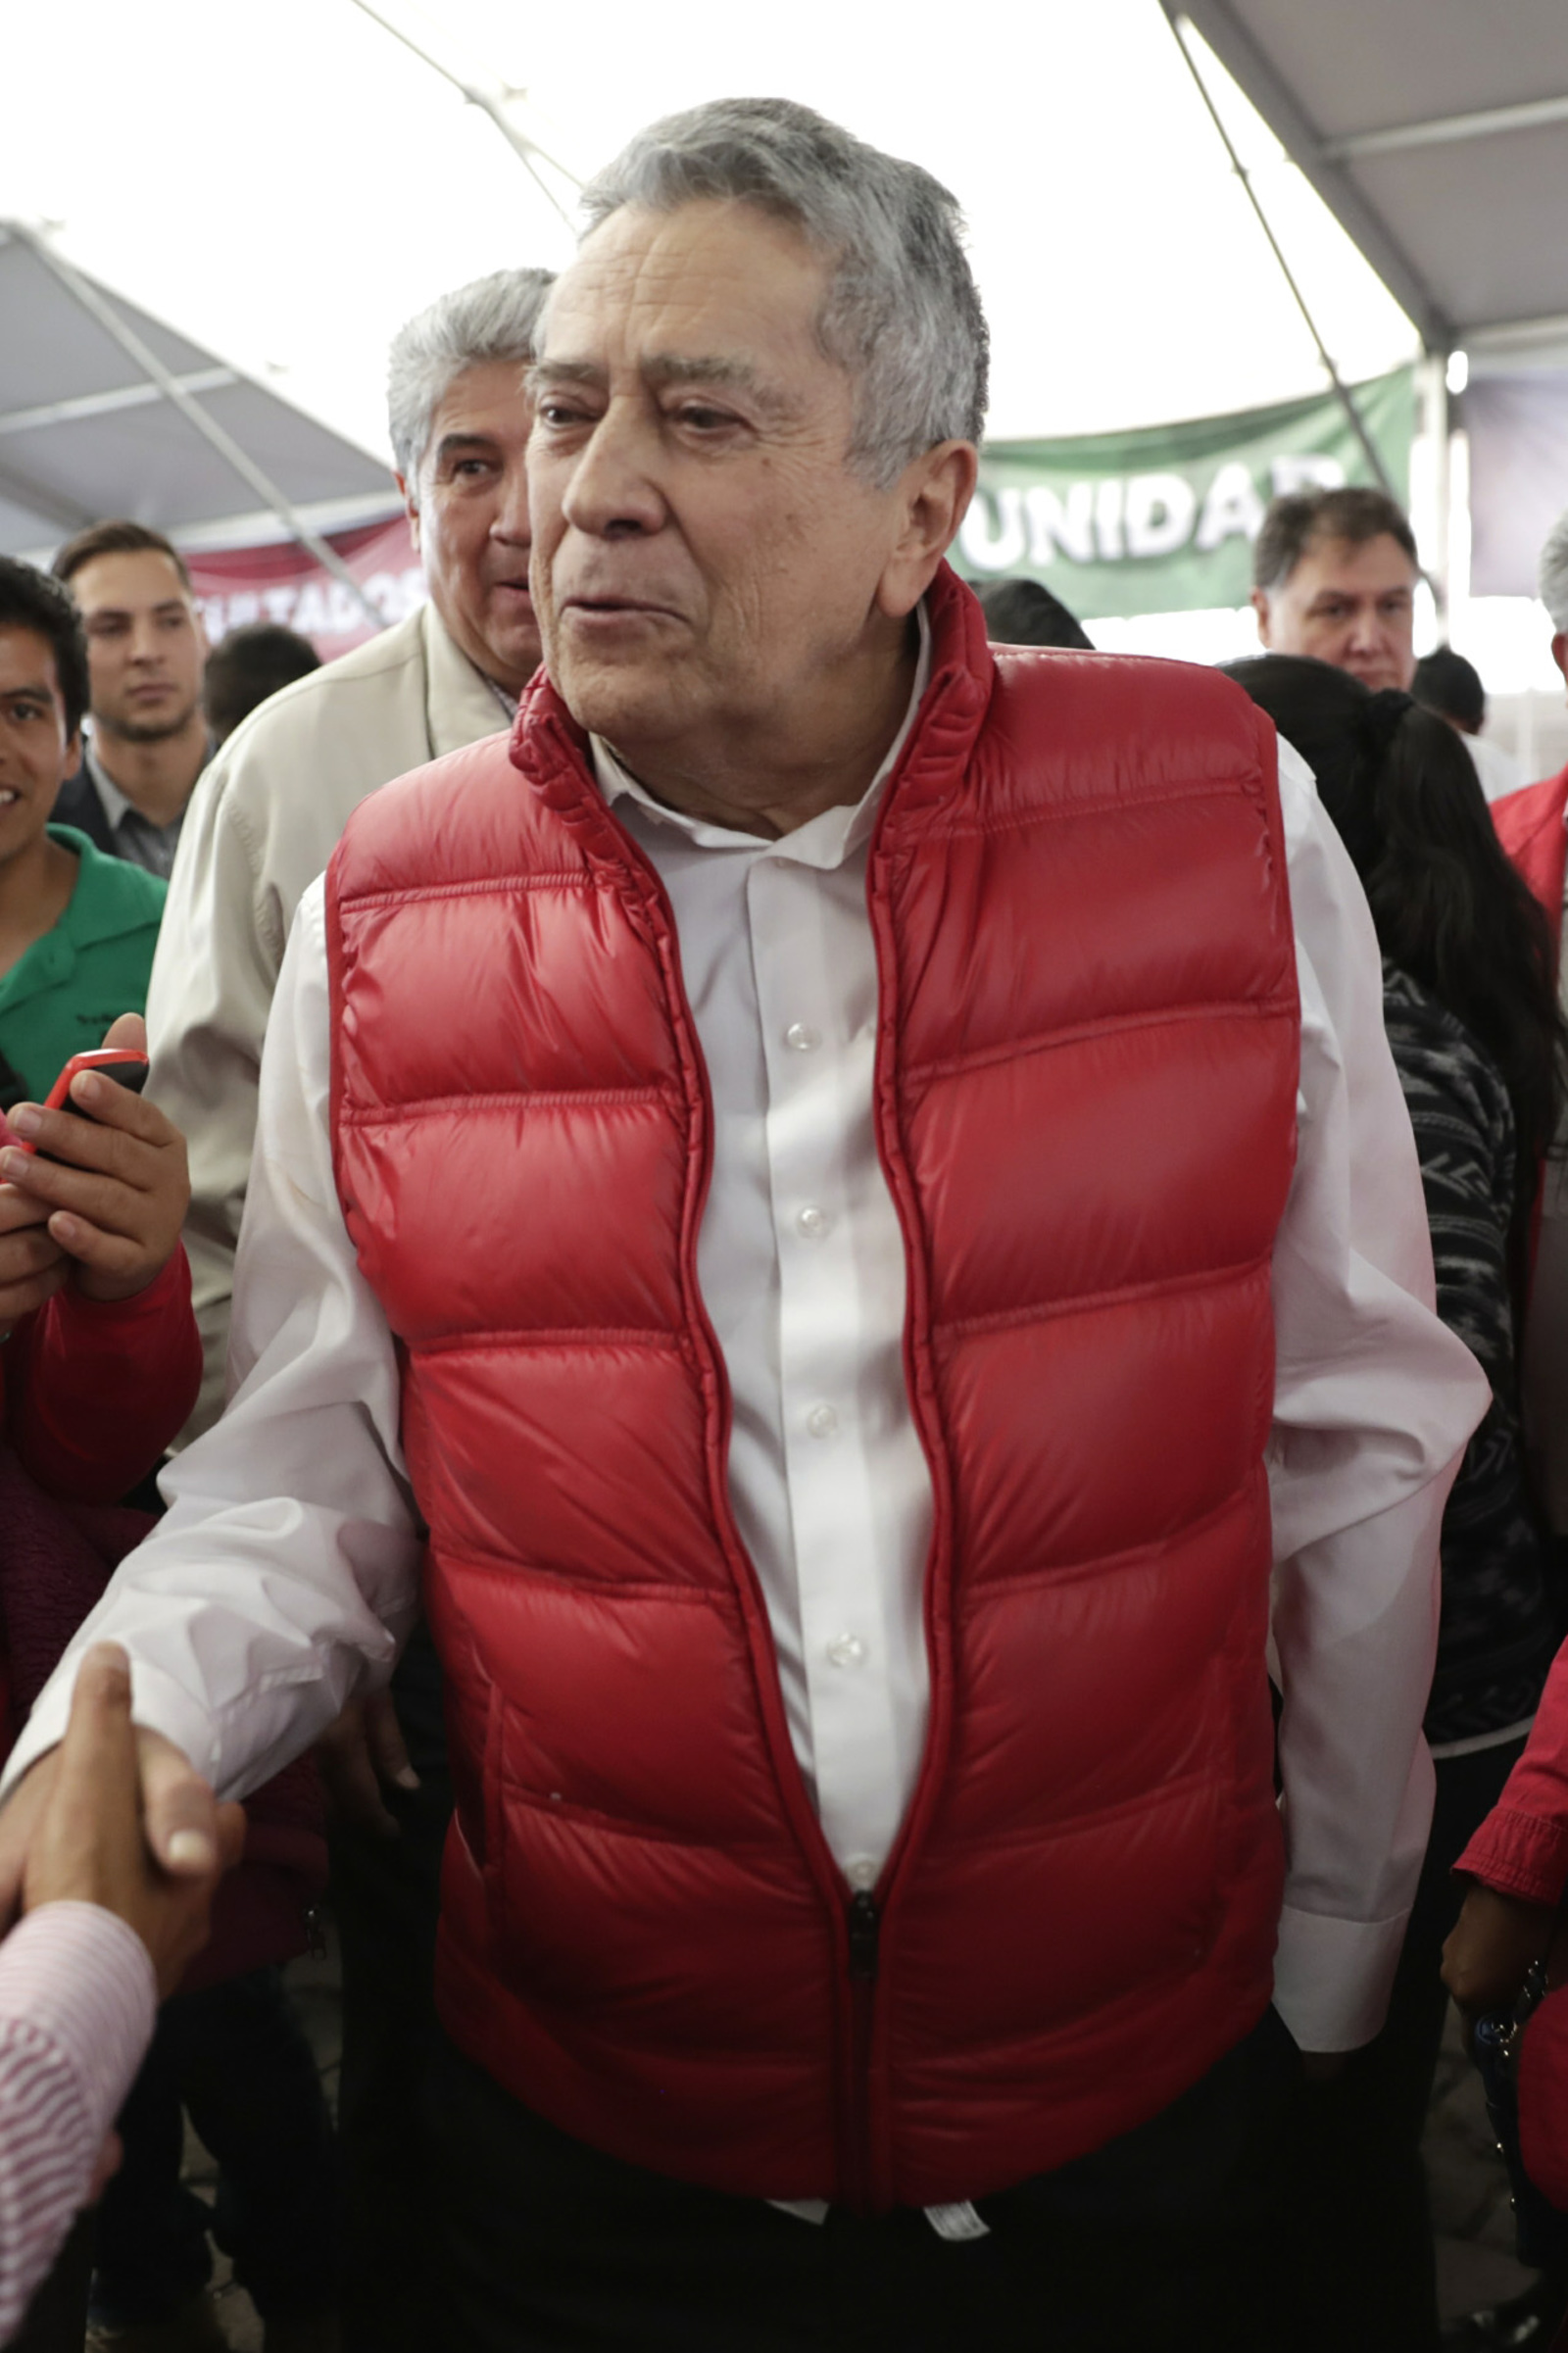 Deceso. El exgobernador del Estado de México, Alfredo del Mazo González, falleció ayer a la edad de 75 años. (AGENCIAS)